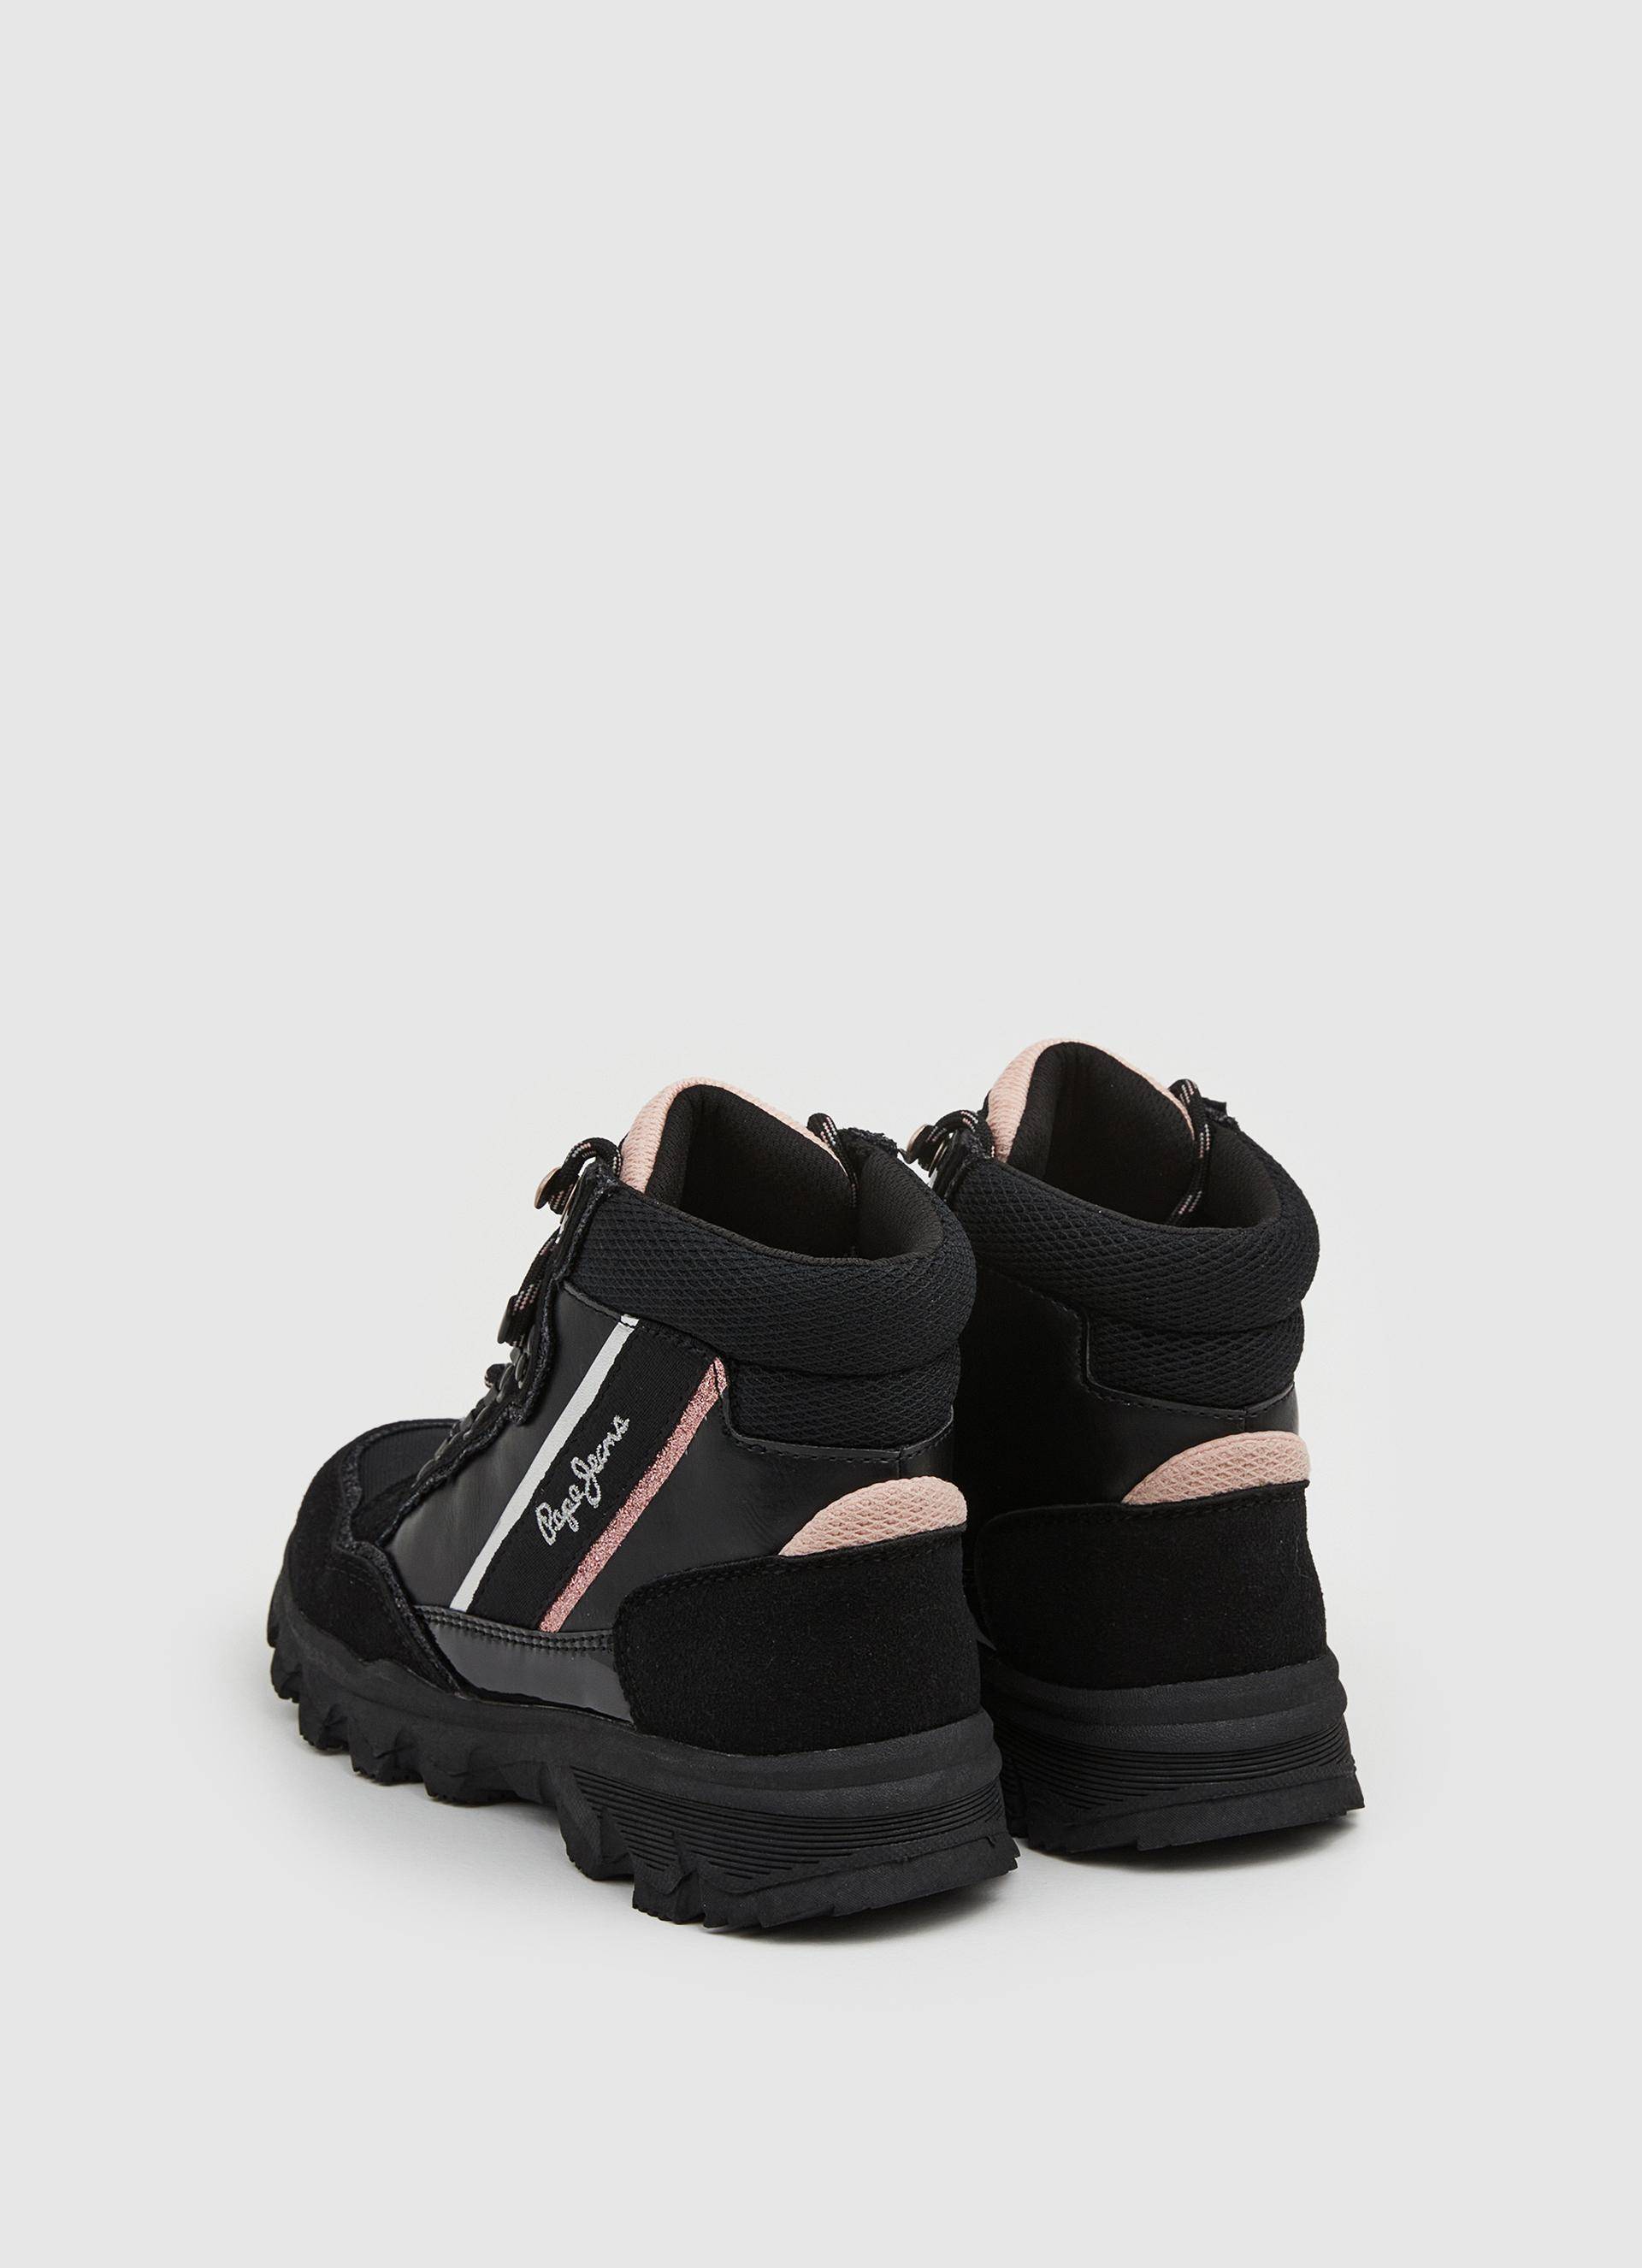 Детские ботинки Pepe Jeans London (PEAK BRAND PGS30555), черные, цвет черный, размер 36 - фото 4